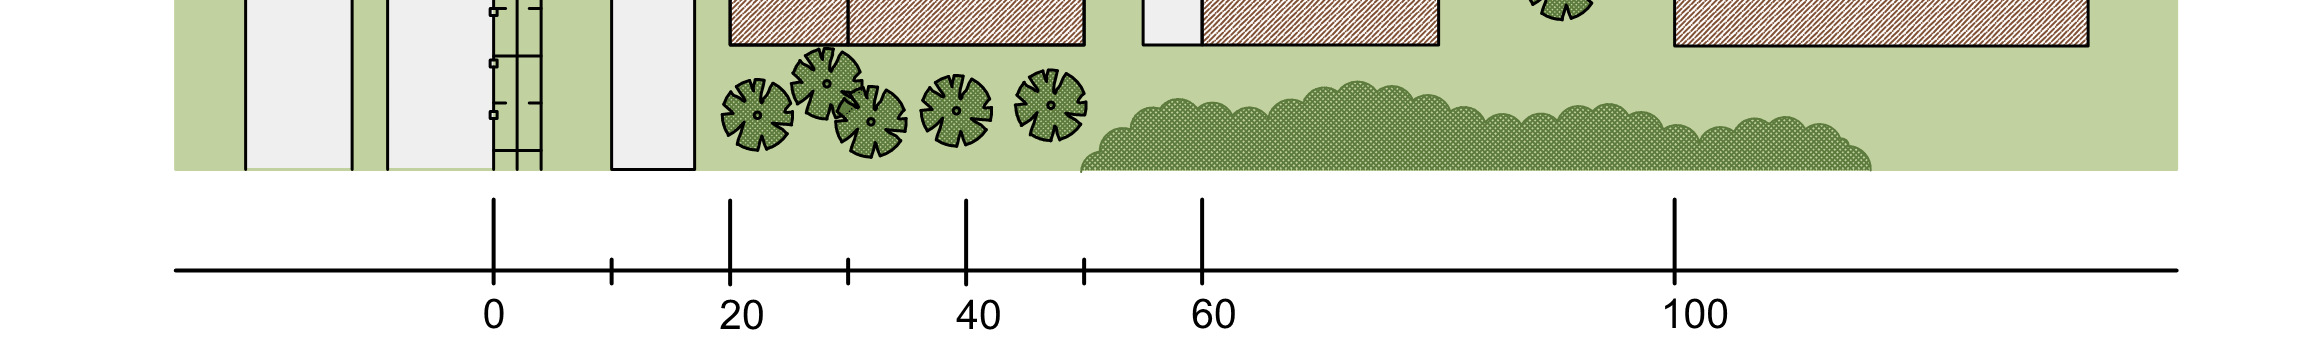 Exempel 3: Reducerat avstånd Väg-Hög Följande exempel visar på ett område där vissa byggnader etableras på kortare avstånd än basavstånd varför skyddsåtgärder ska införas för dessa.